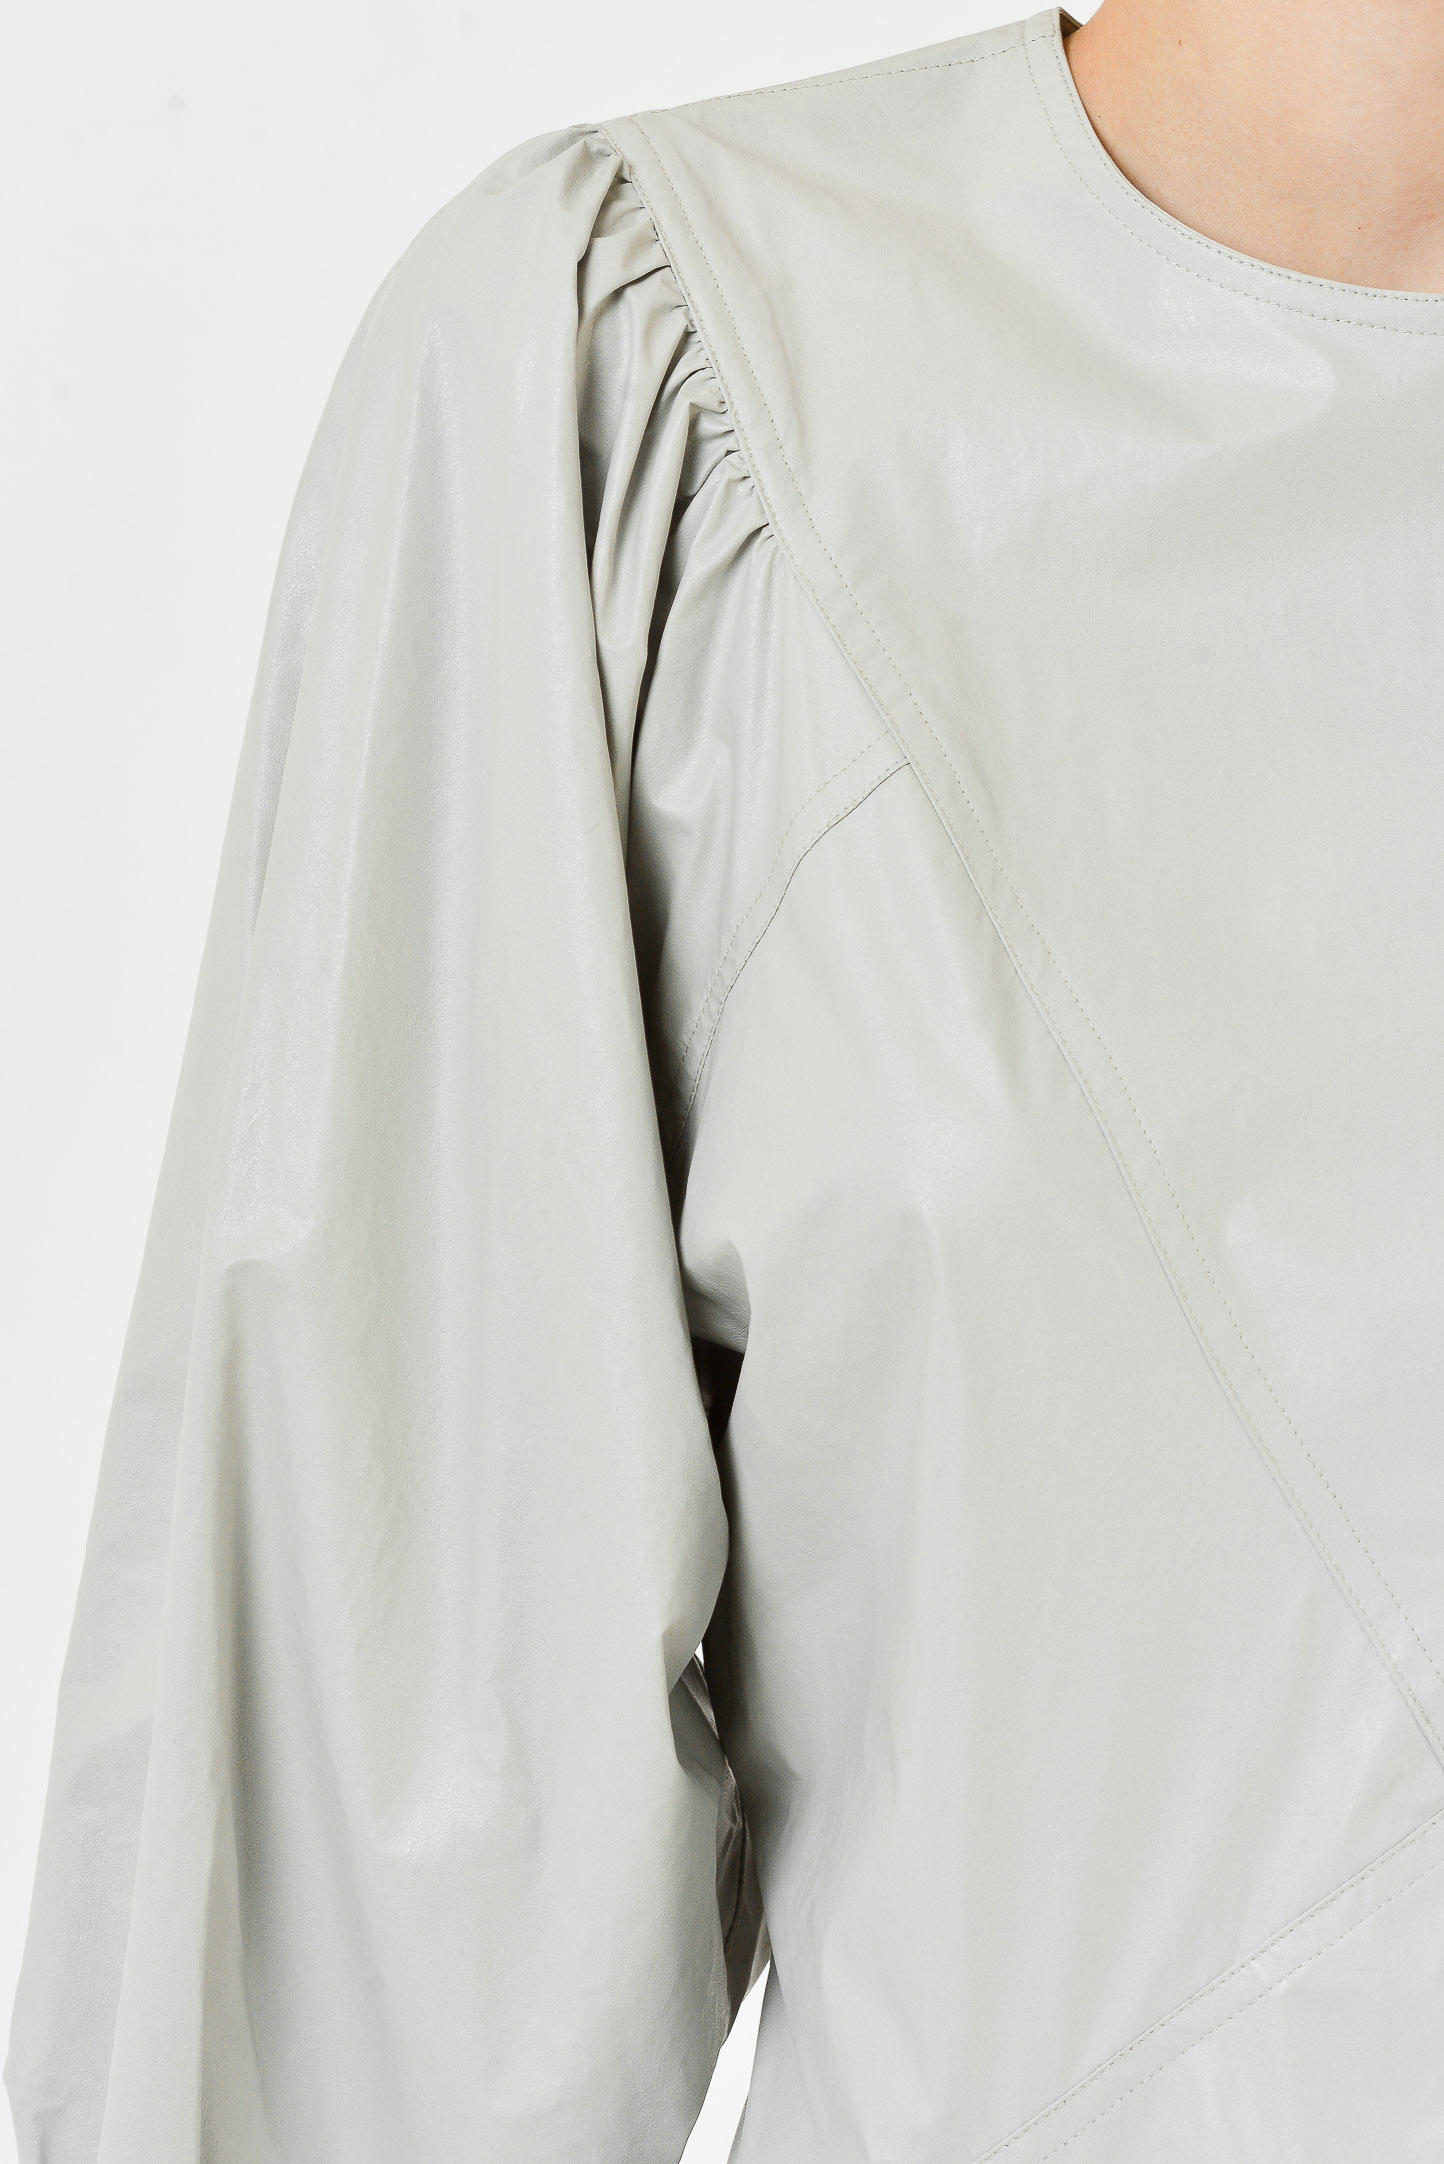 Платье ISABEL MARANT RO1773-20A006I, цвет: Серый, Женский